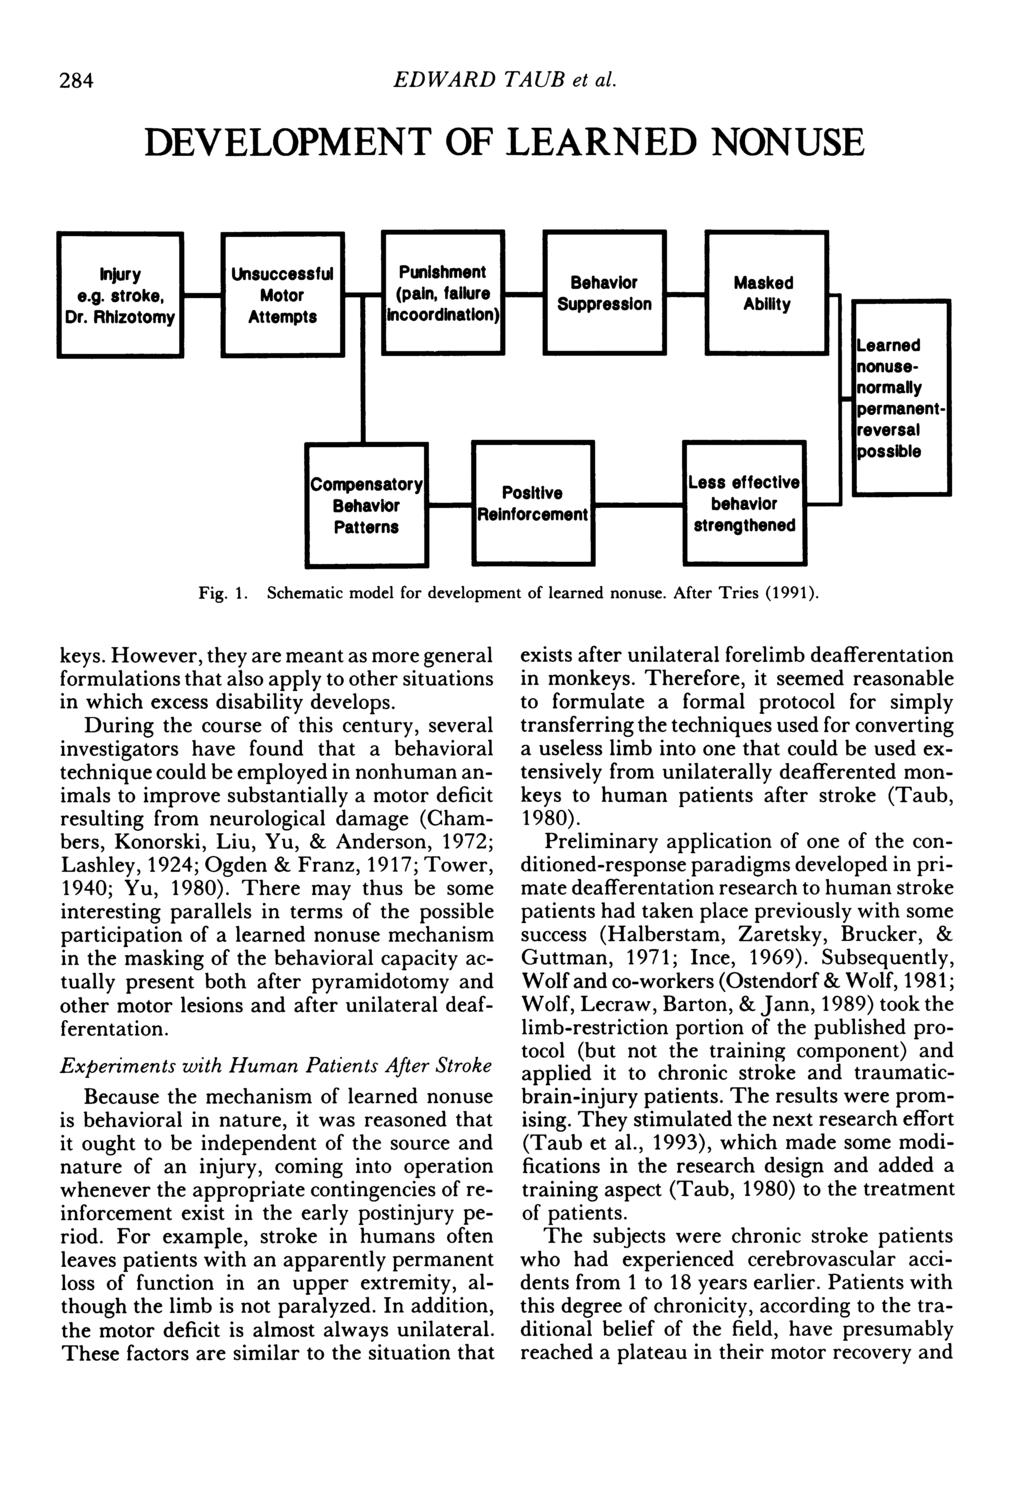 284 EDWARD TAUB et al. DEVELOPMENT OF LEARNED NONUSE Fig. 1. Schematic model for development of learned nonuse. After Tries (1991). keys.